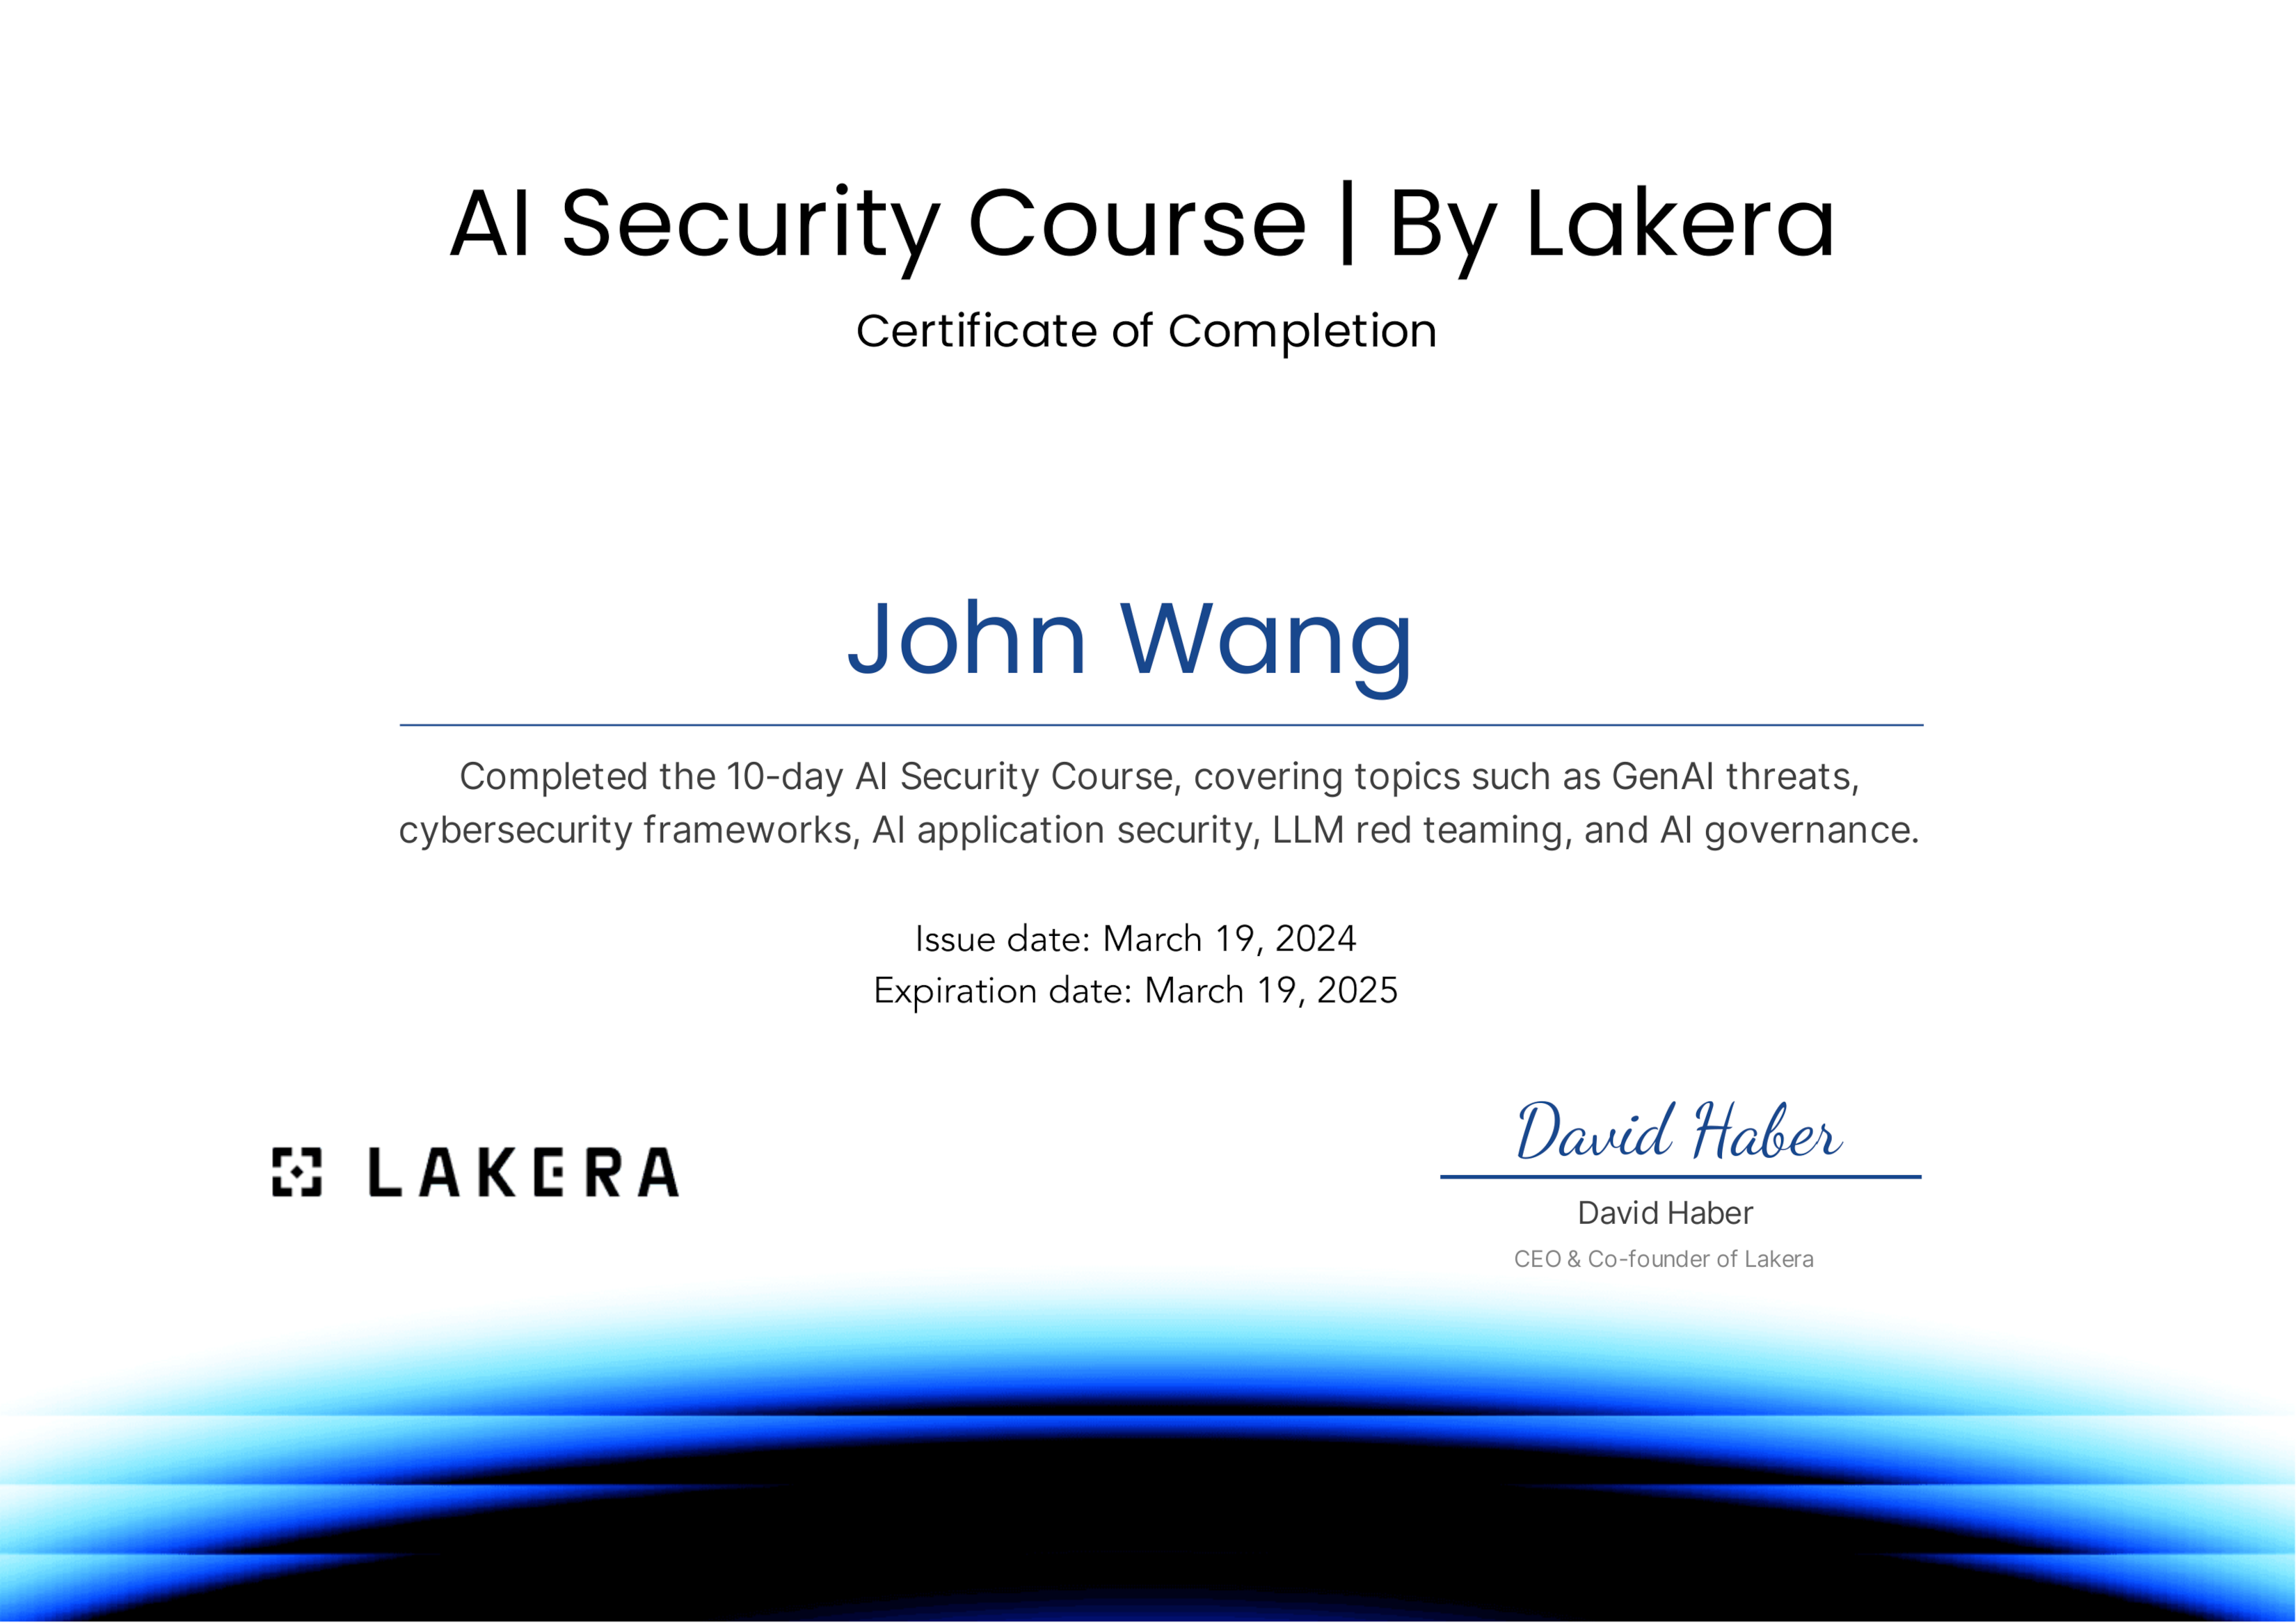 John's AI Security from Lakera